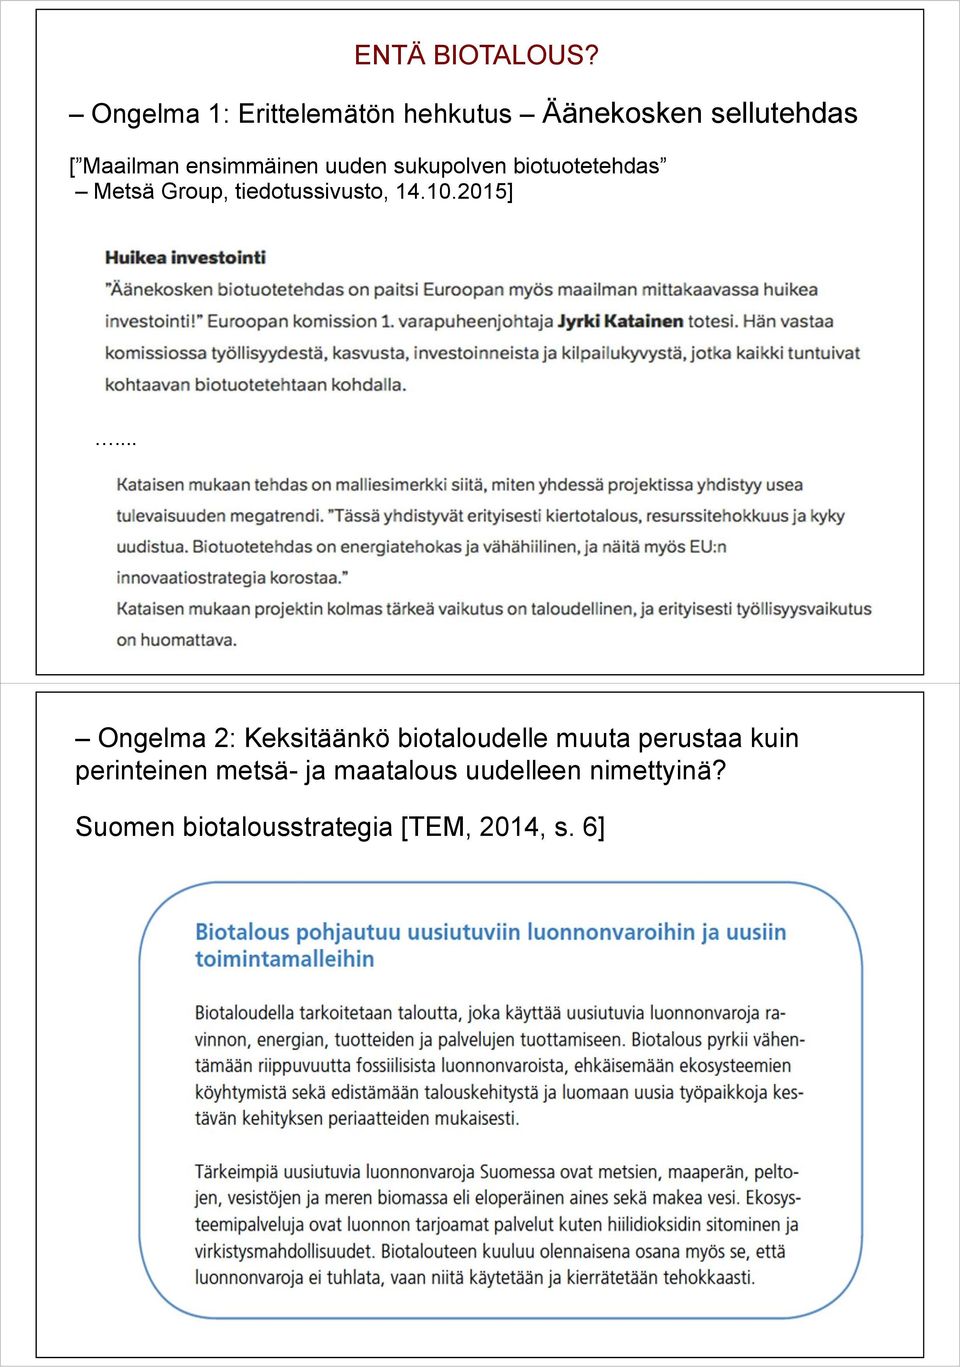 uuden sukupolven biotuotetehdas Metsä Group, tiedotussivusto, 14.10.2015].